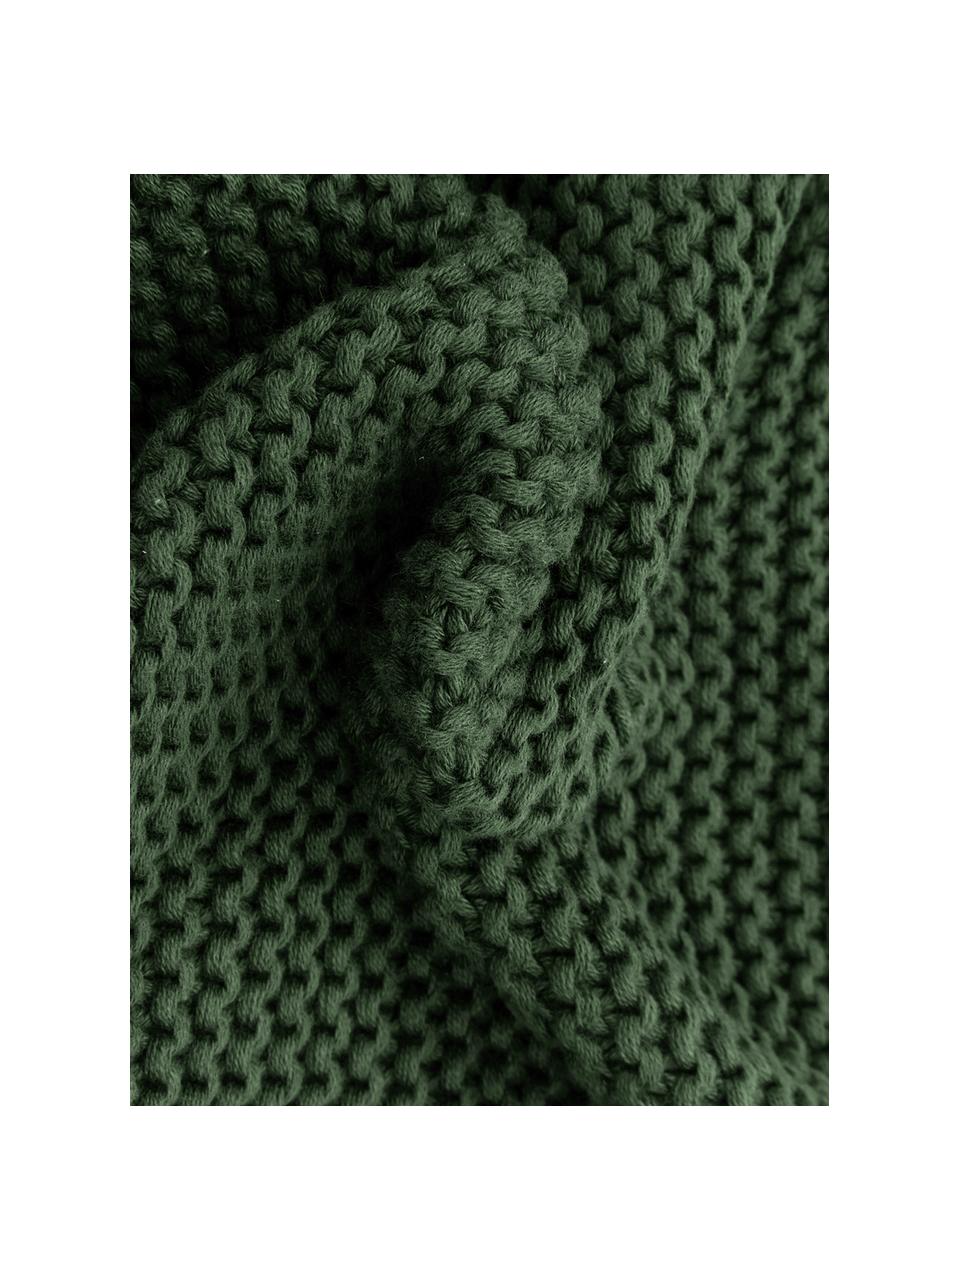 Federa arredo fatta a maglia verde scuro Adalyn, 100% cotone biologico, certificato GOTS, Verde, Larg. 30 x Lung. 50 cm